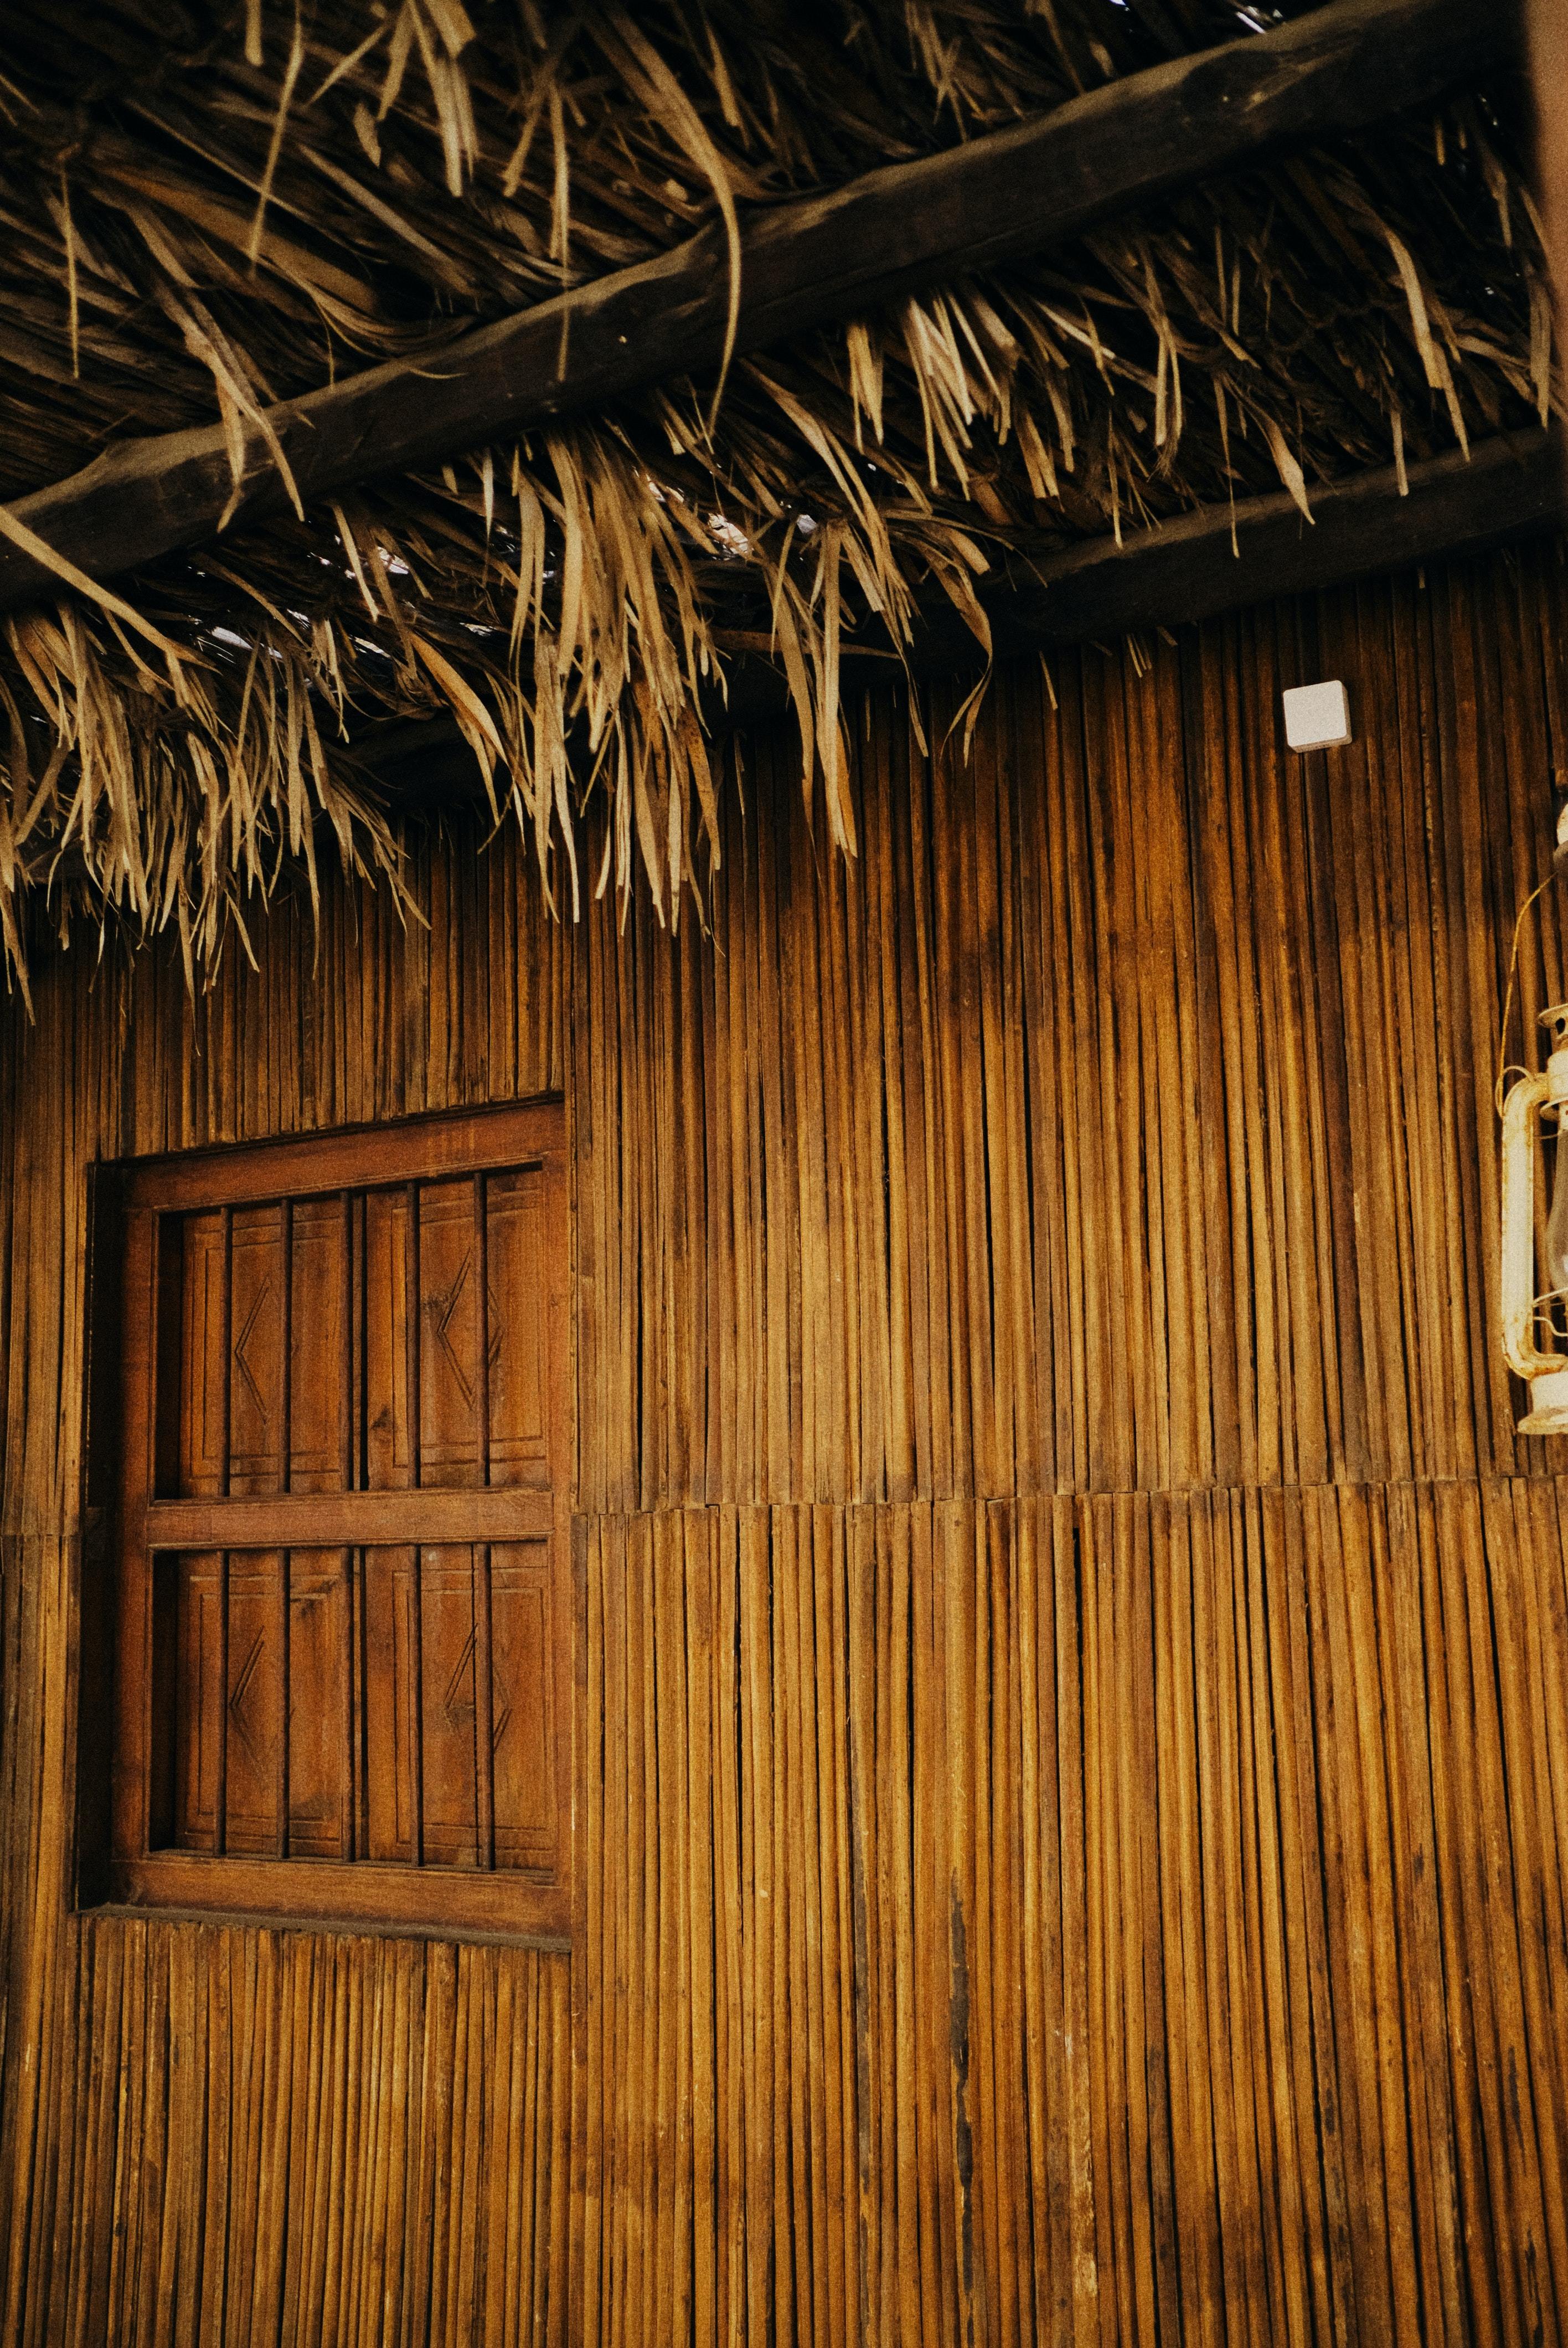 旧房子竹子结构墙